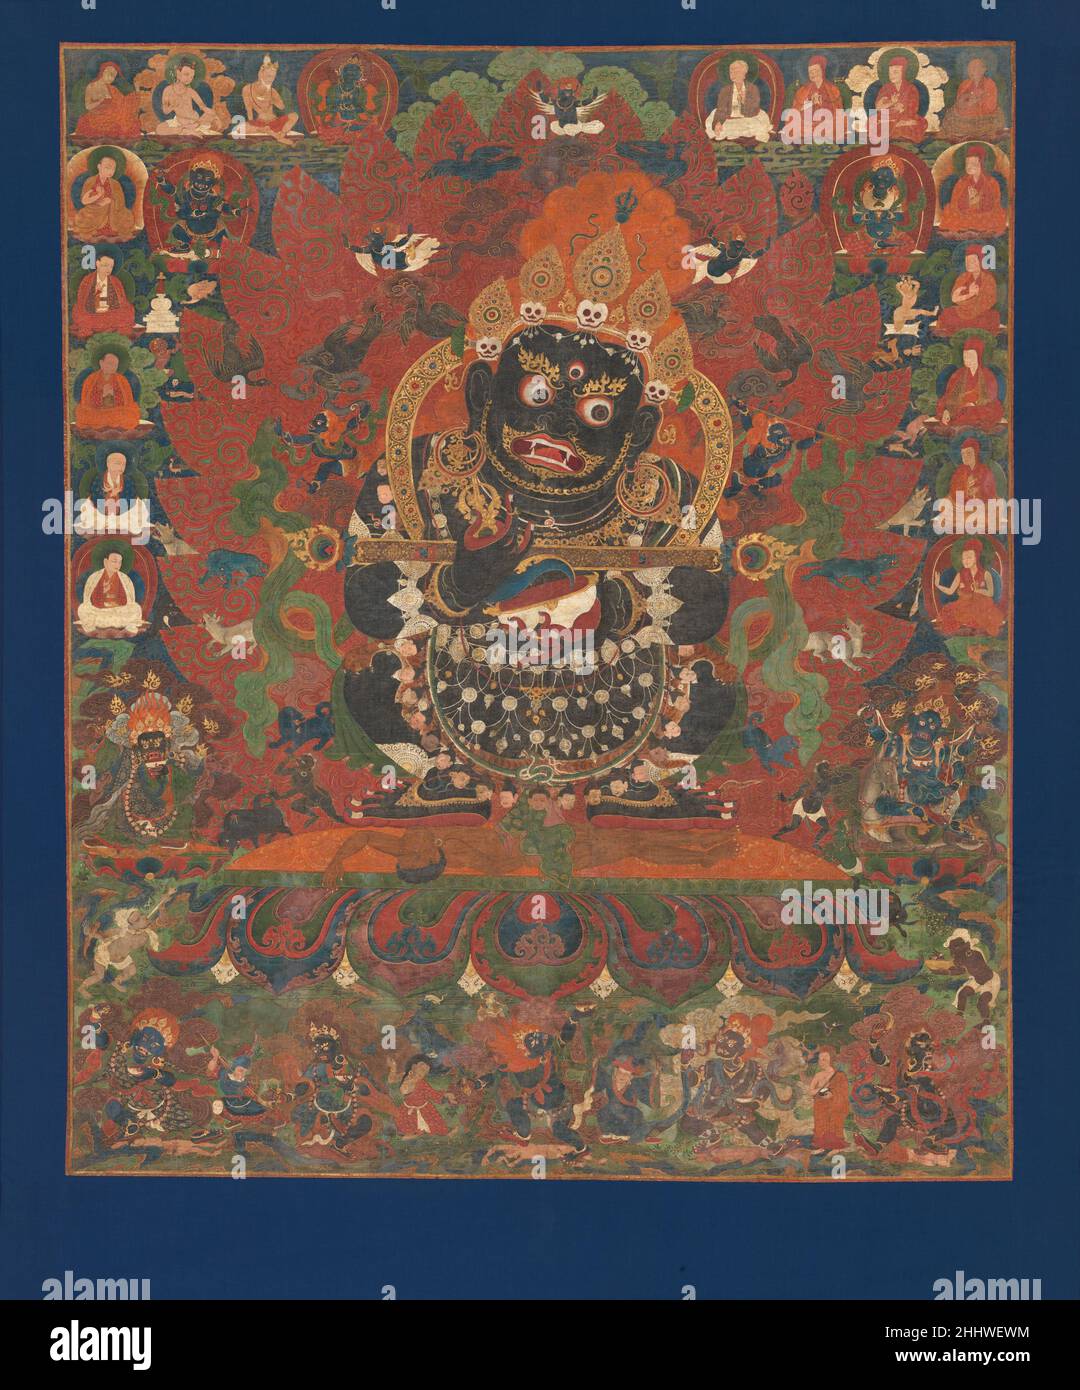 Mahakala, protettore della tenda ca. 1500 il Tibet centrale Mahakala è uno dei guardiani più popolari del pantheon buddista tibetano. Qui egli tramola un cadavere mentre si sbanda un coltello flaying e una tazza di cranio piena di sangue, il che significa la distruzione degli impedimenti all'illuminazione. Nei ruscelli dei suoi gomiti sostiene un gong gandi, simbolo del suo voto di protezione della comunità dei monaci (Sangha). I suoi principali compagni, Palden Remati e Palden Lhamo, appaiono alla sua sinistra, e Legden Nagpo e Bhutadamara sono alla sua destra. In basso a sinistra si trova Brahmarupa che soffia una tromba a forma di cosce. È speciale Foto Stock